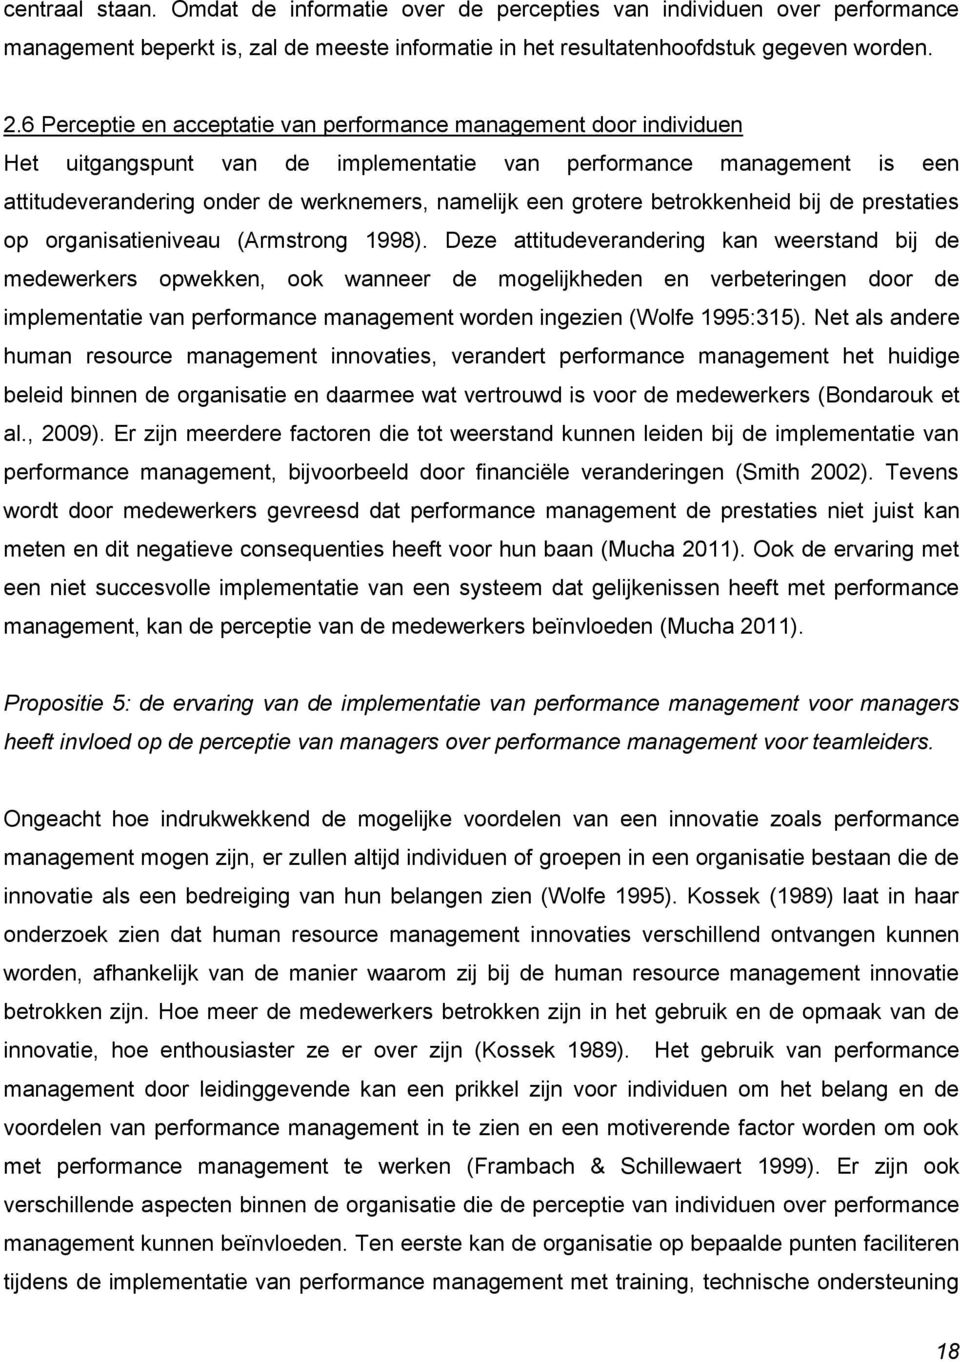 grotere betrokkenheid bij de prestaties op organisatieniveau (Armstrong 1998).